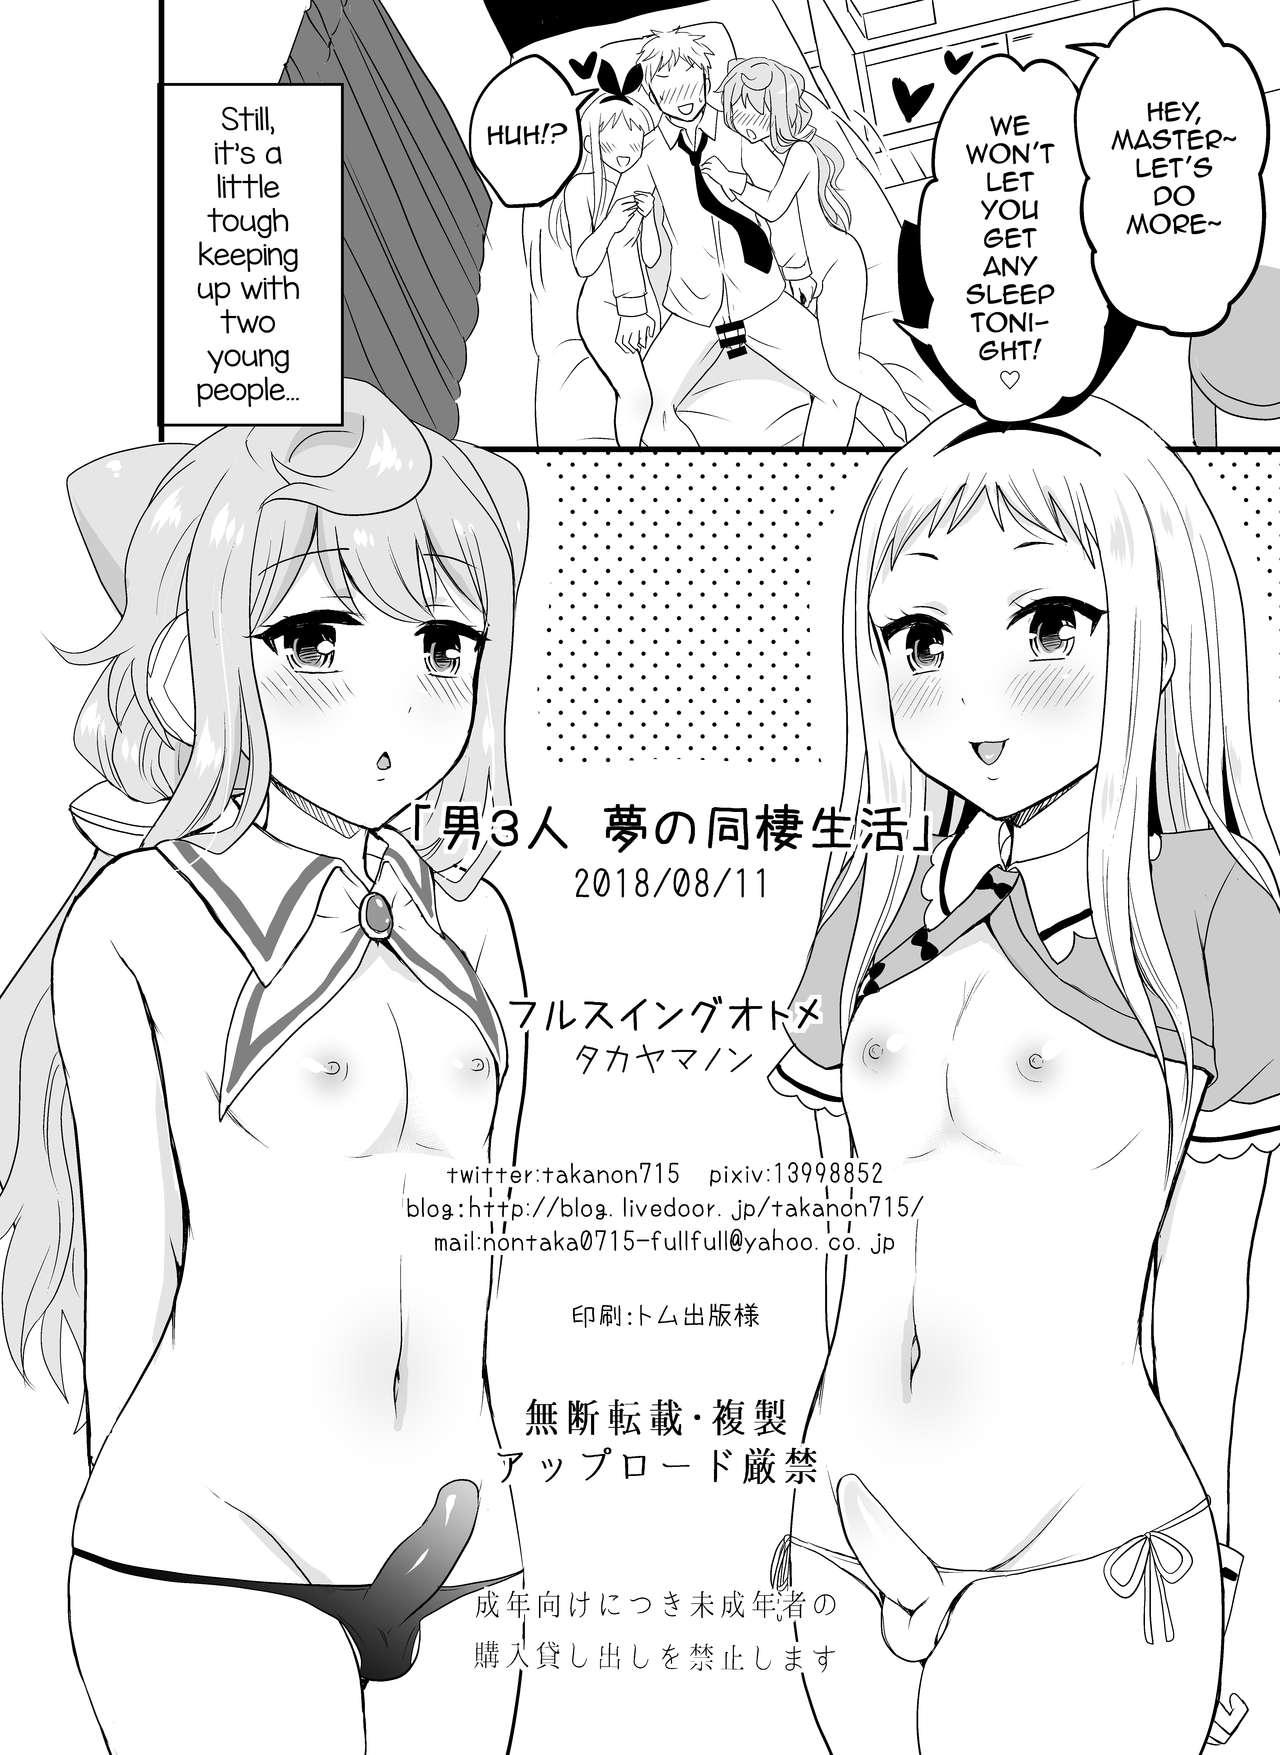 Small Otoko 3-nin Yume no Dousei Seikatsu - Hacka doll Blend s Handjobs - Page 17